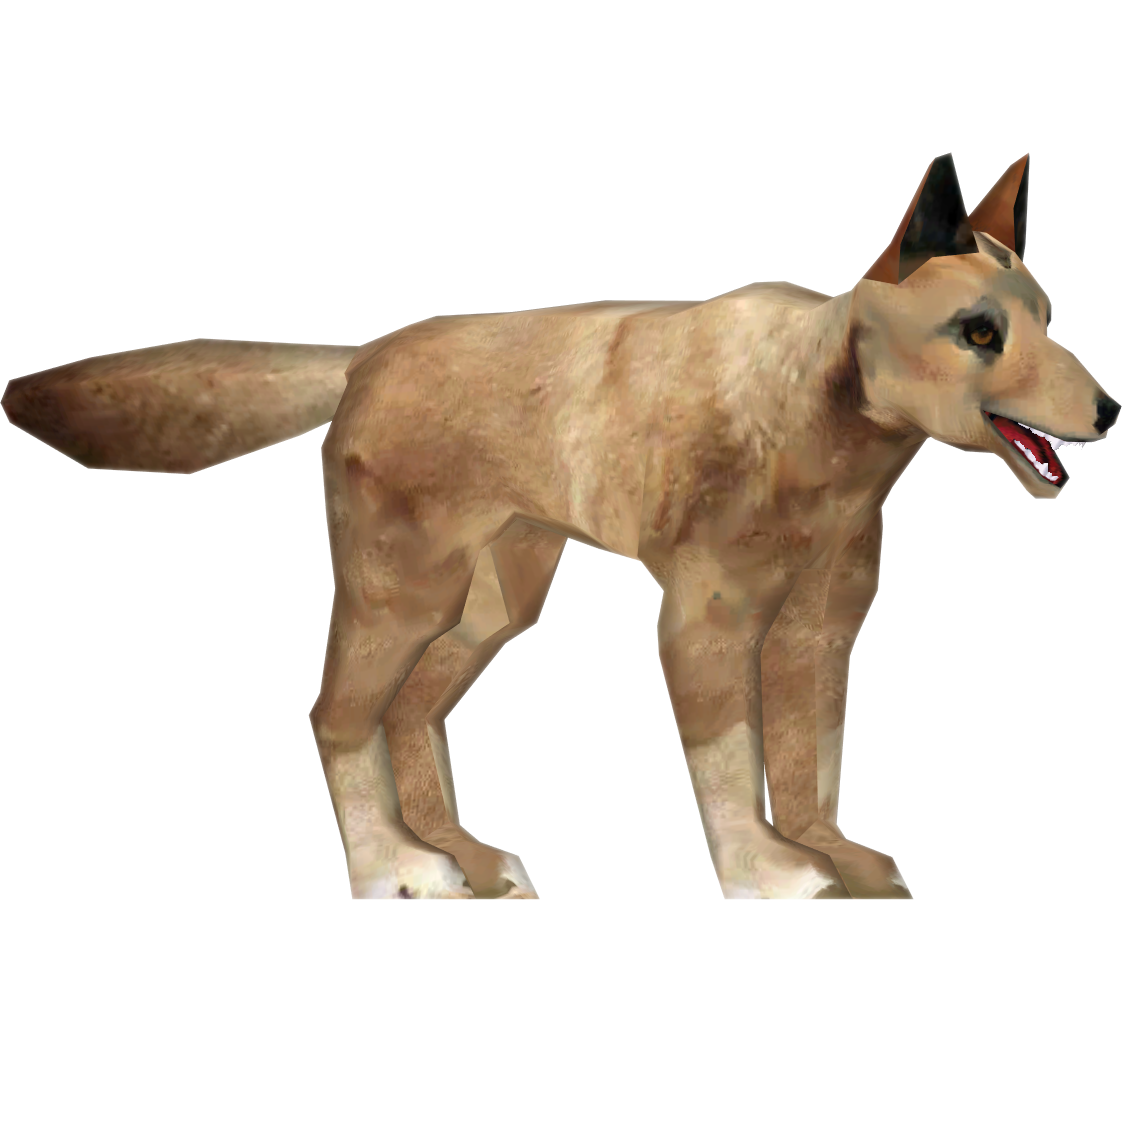 Dingo, Wildlife Park 2 Wiki